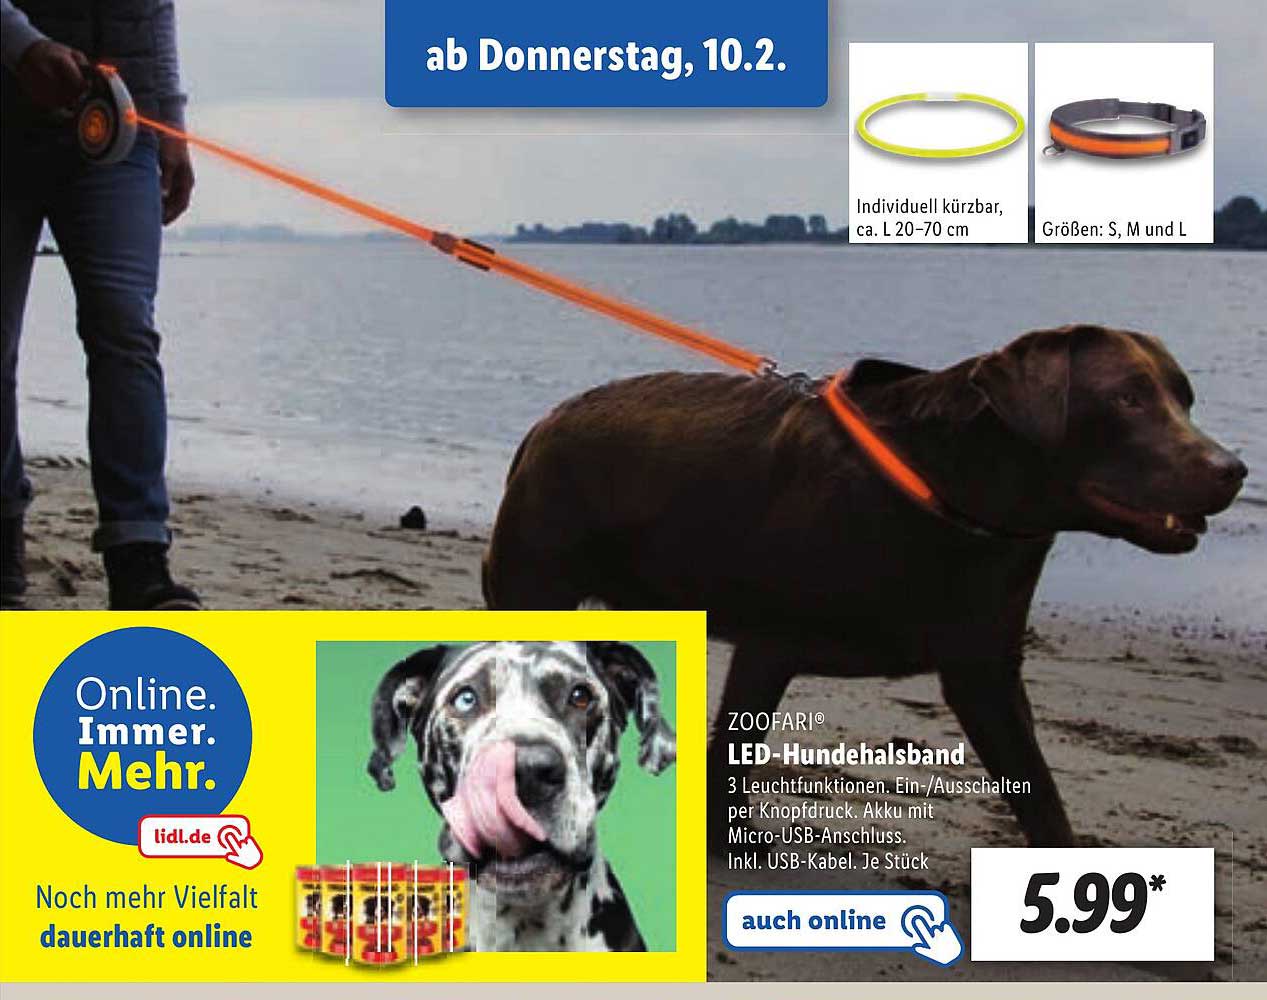 Zoofari Led-Hundehalsband Angebot bei Lidl | Hundezubehör